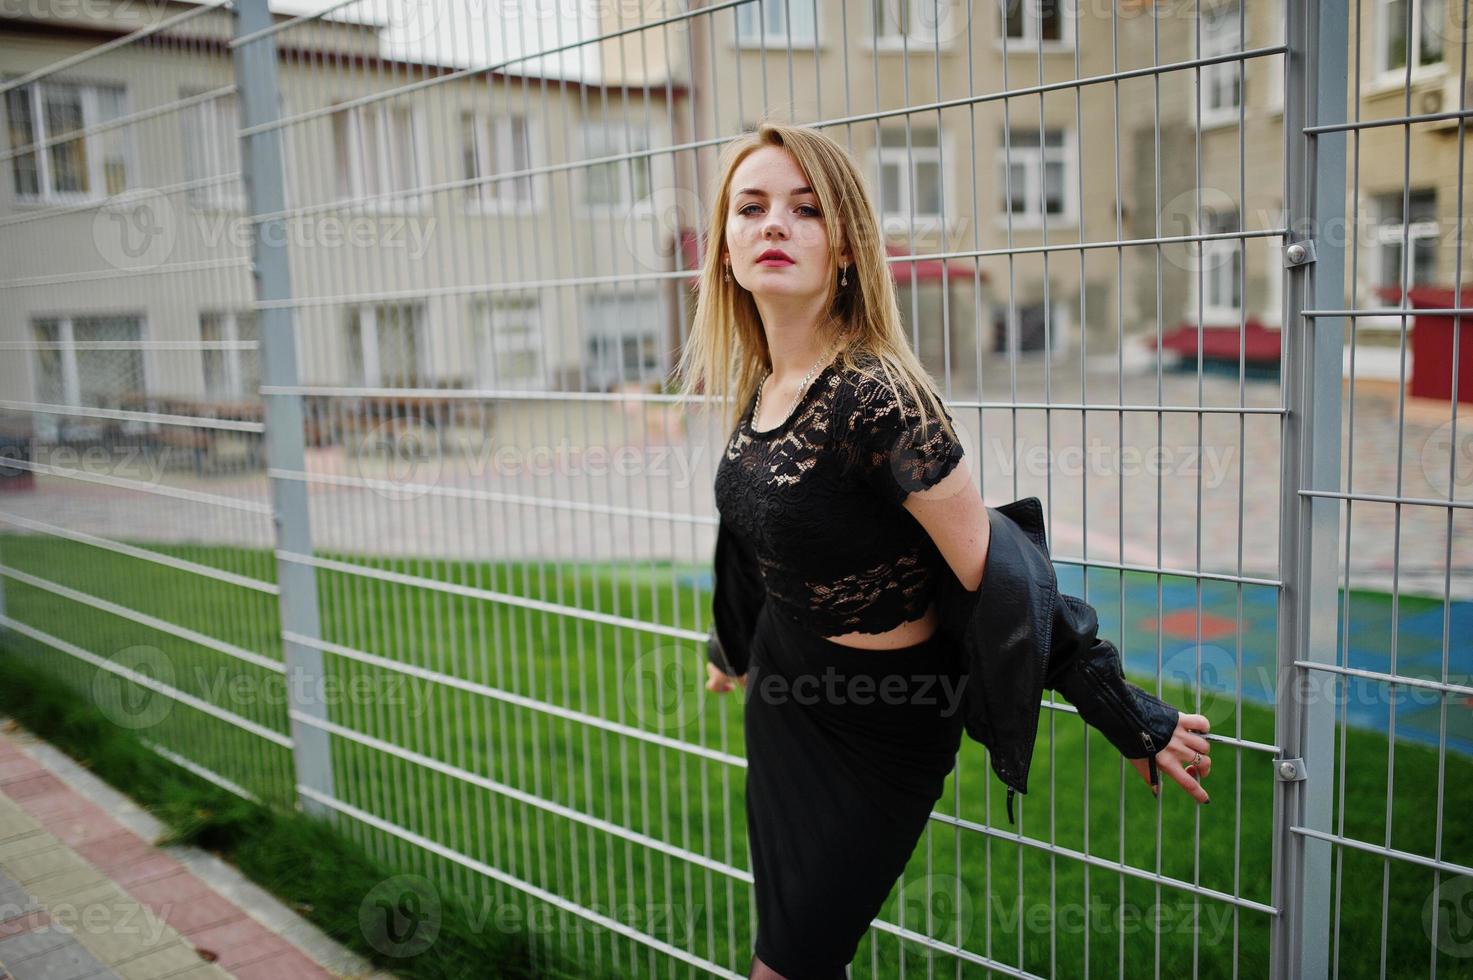 elegante ragazza bionda indossa il nero in posa per le strade della città contro la gabbia di ferro. foto